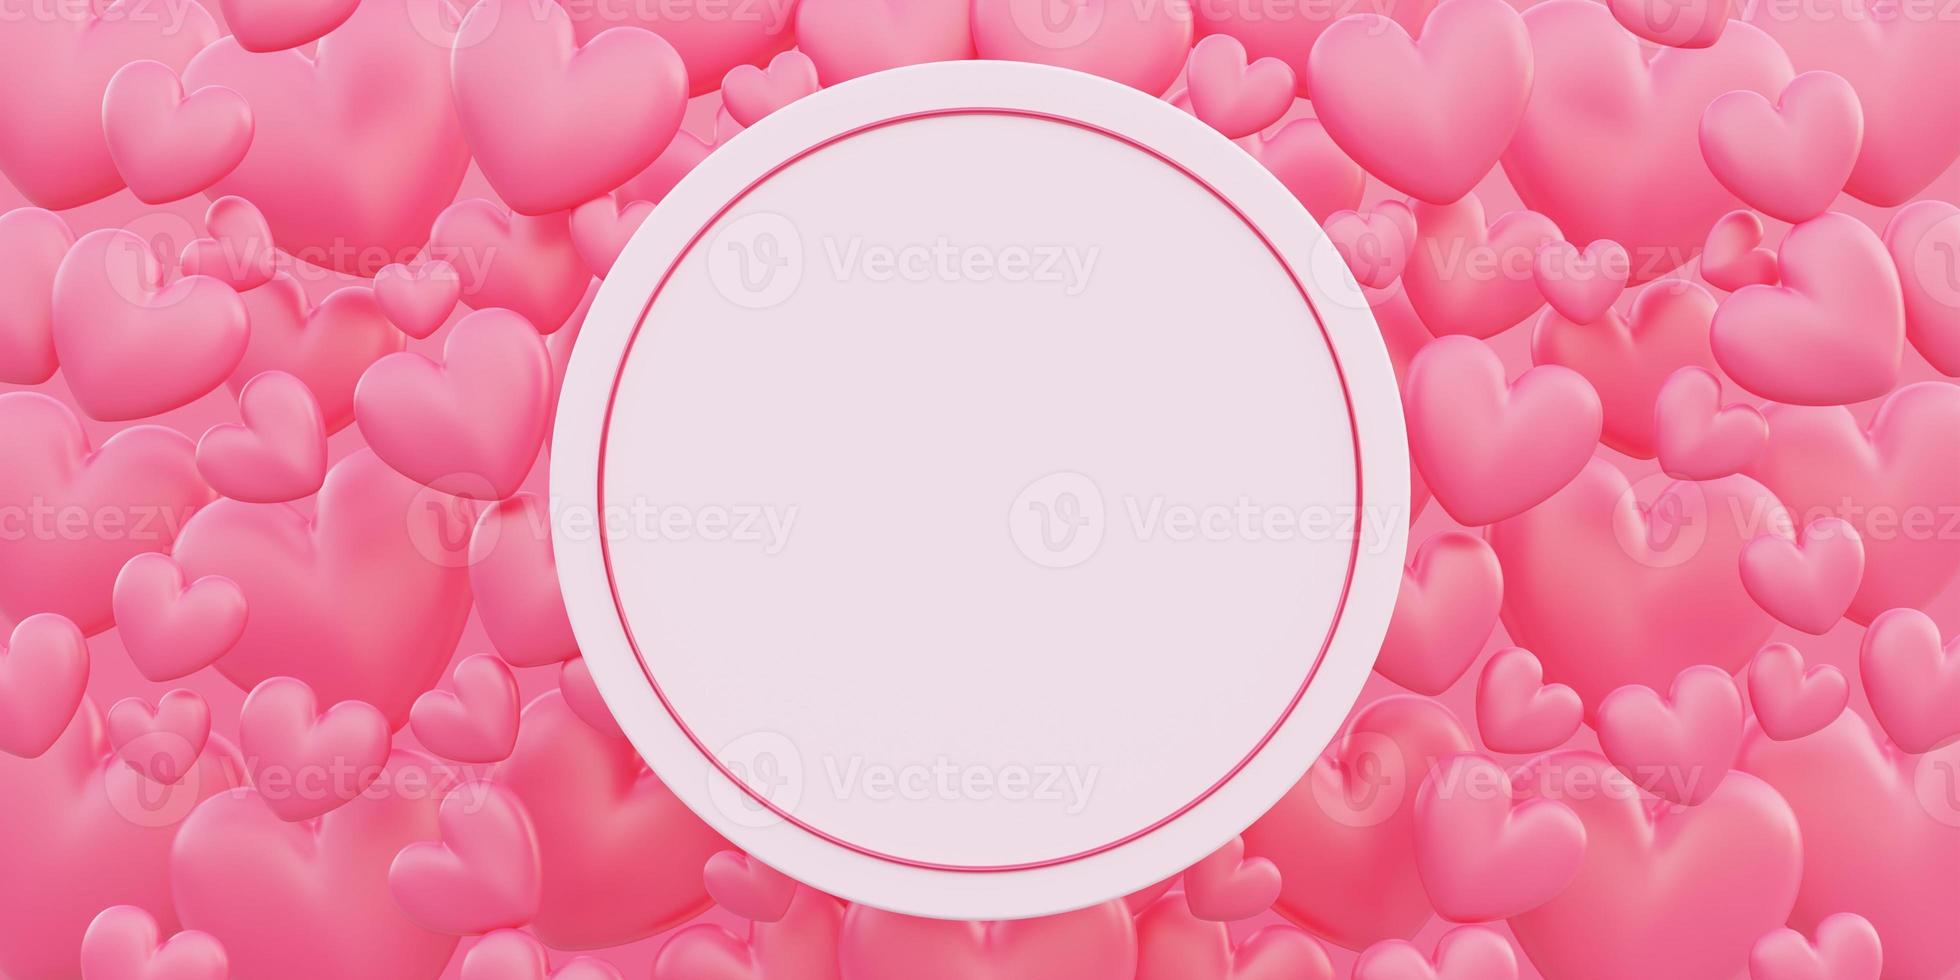 glad alla hjärtans dag, kärlekskoncept, rosa 3d-hjärtformsbakgrund, gratulationskort, cirkelbanner foto